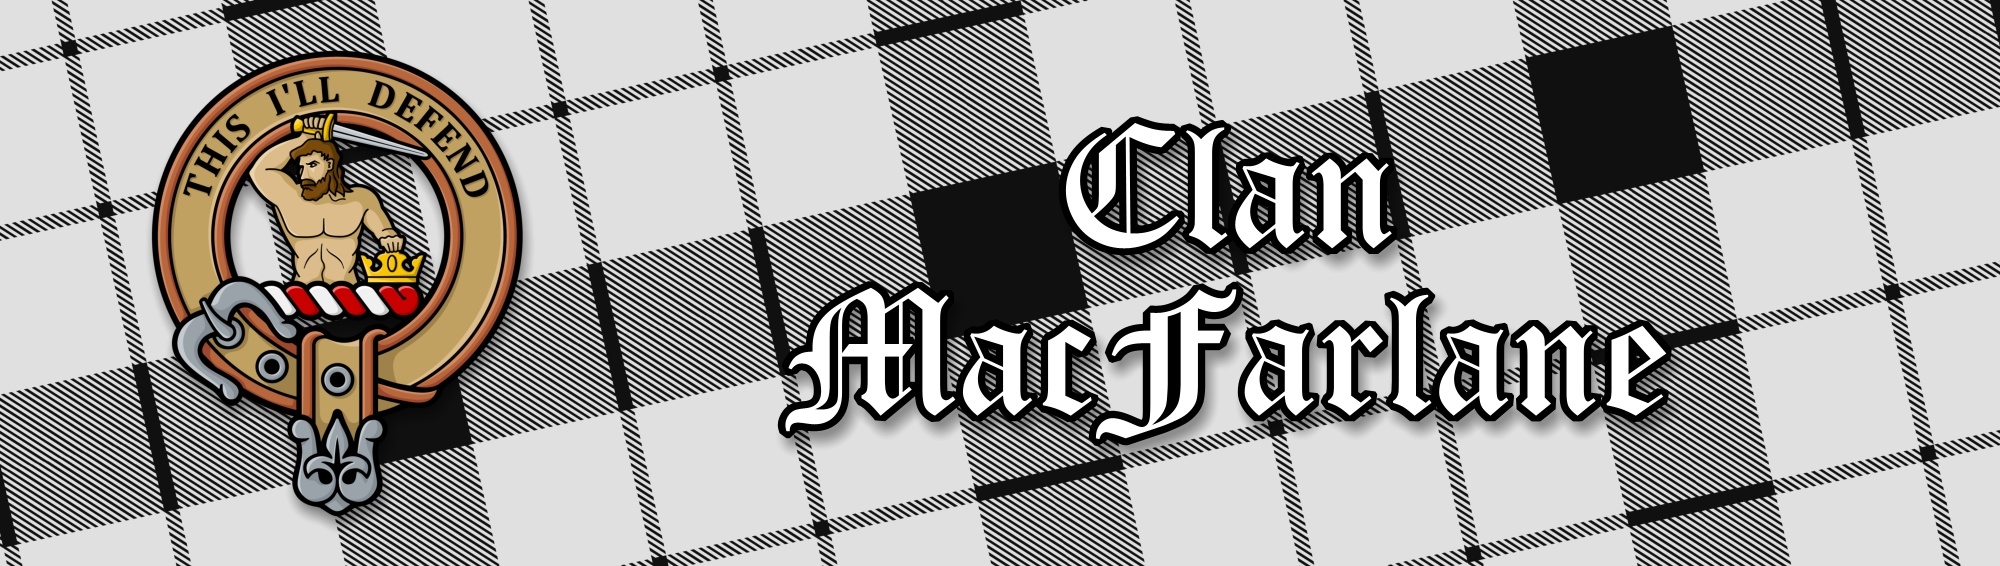 Clan MacFarlane Black and White Tartan Collection